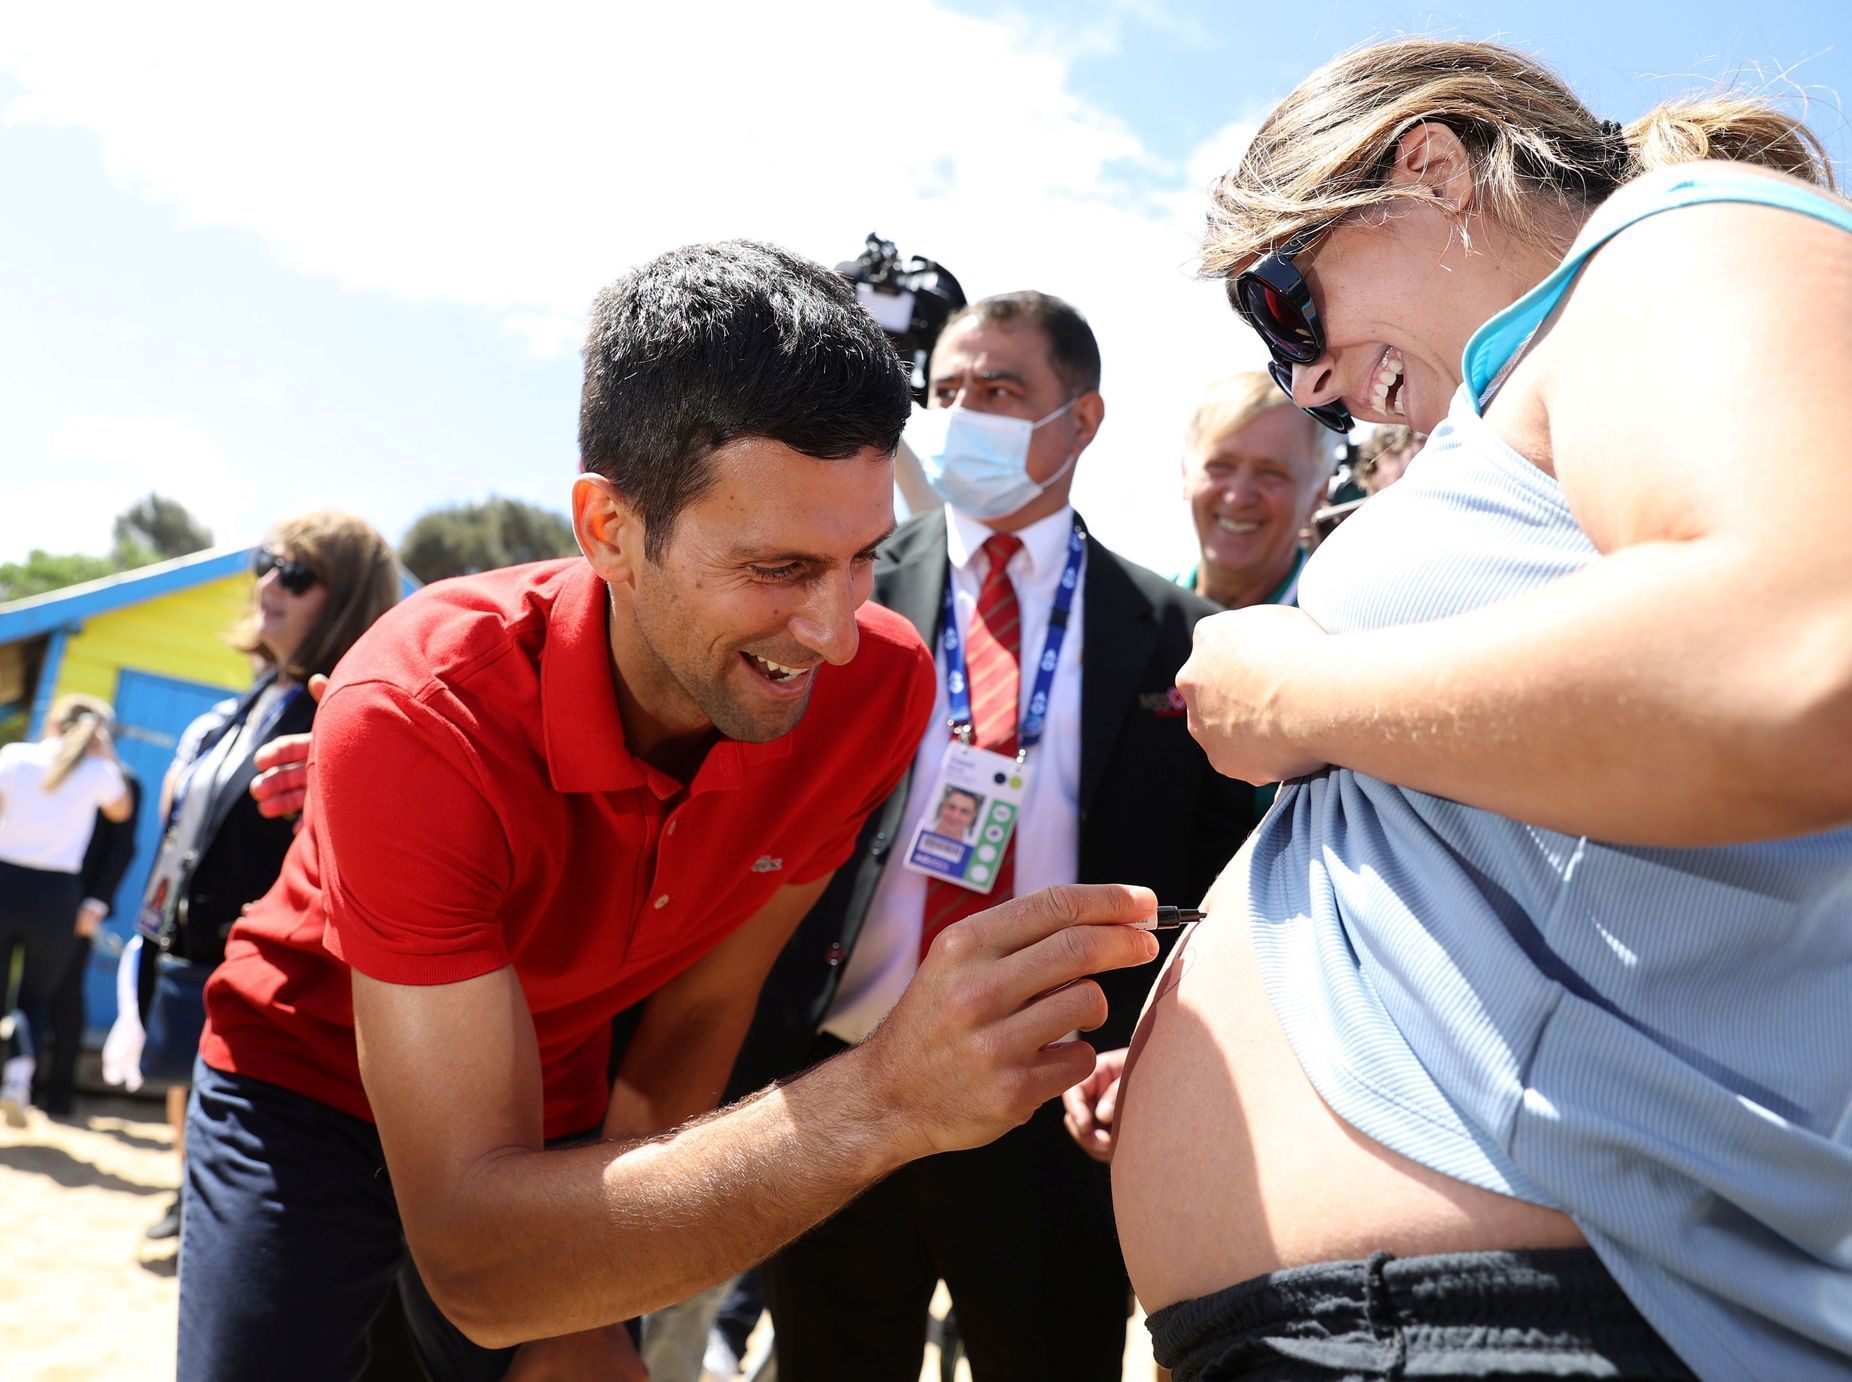 Novak Djokovič se podepisuje na bříško těhotné fanynky při akci na Brighton Beach v Melbourne po vítězství na Australian Open